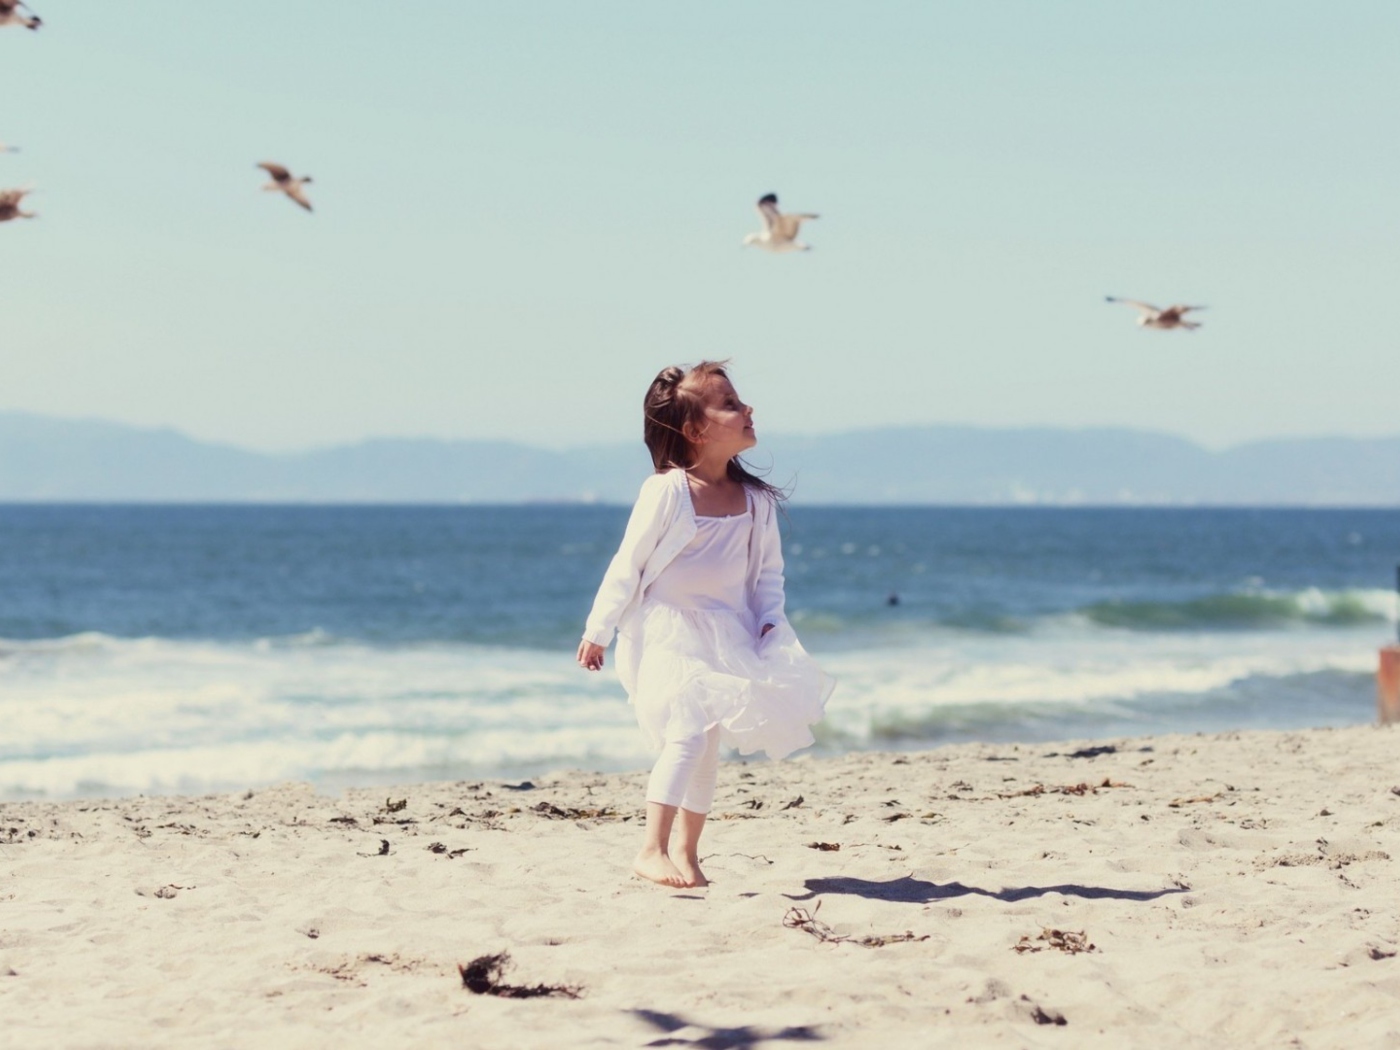 Little Girl And Seagulls On Beach wallpaper 1400x1050